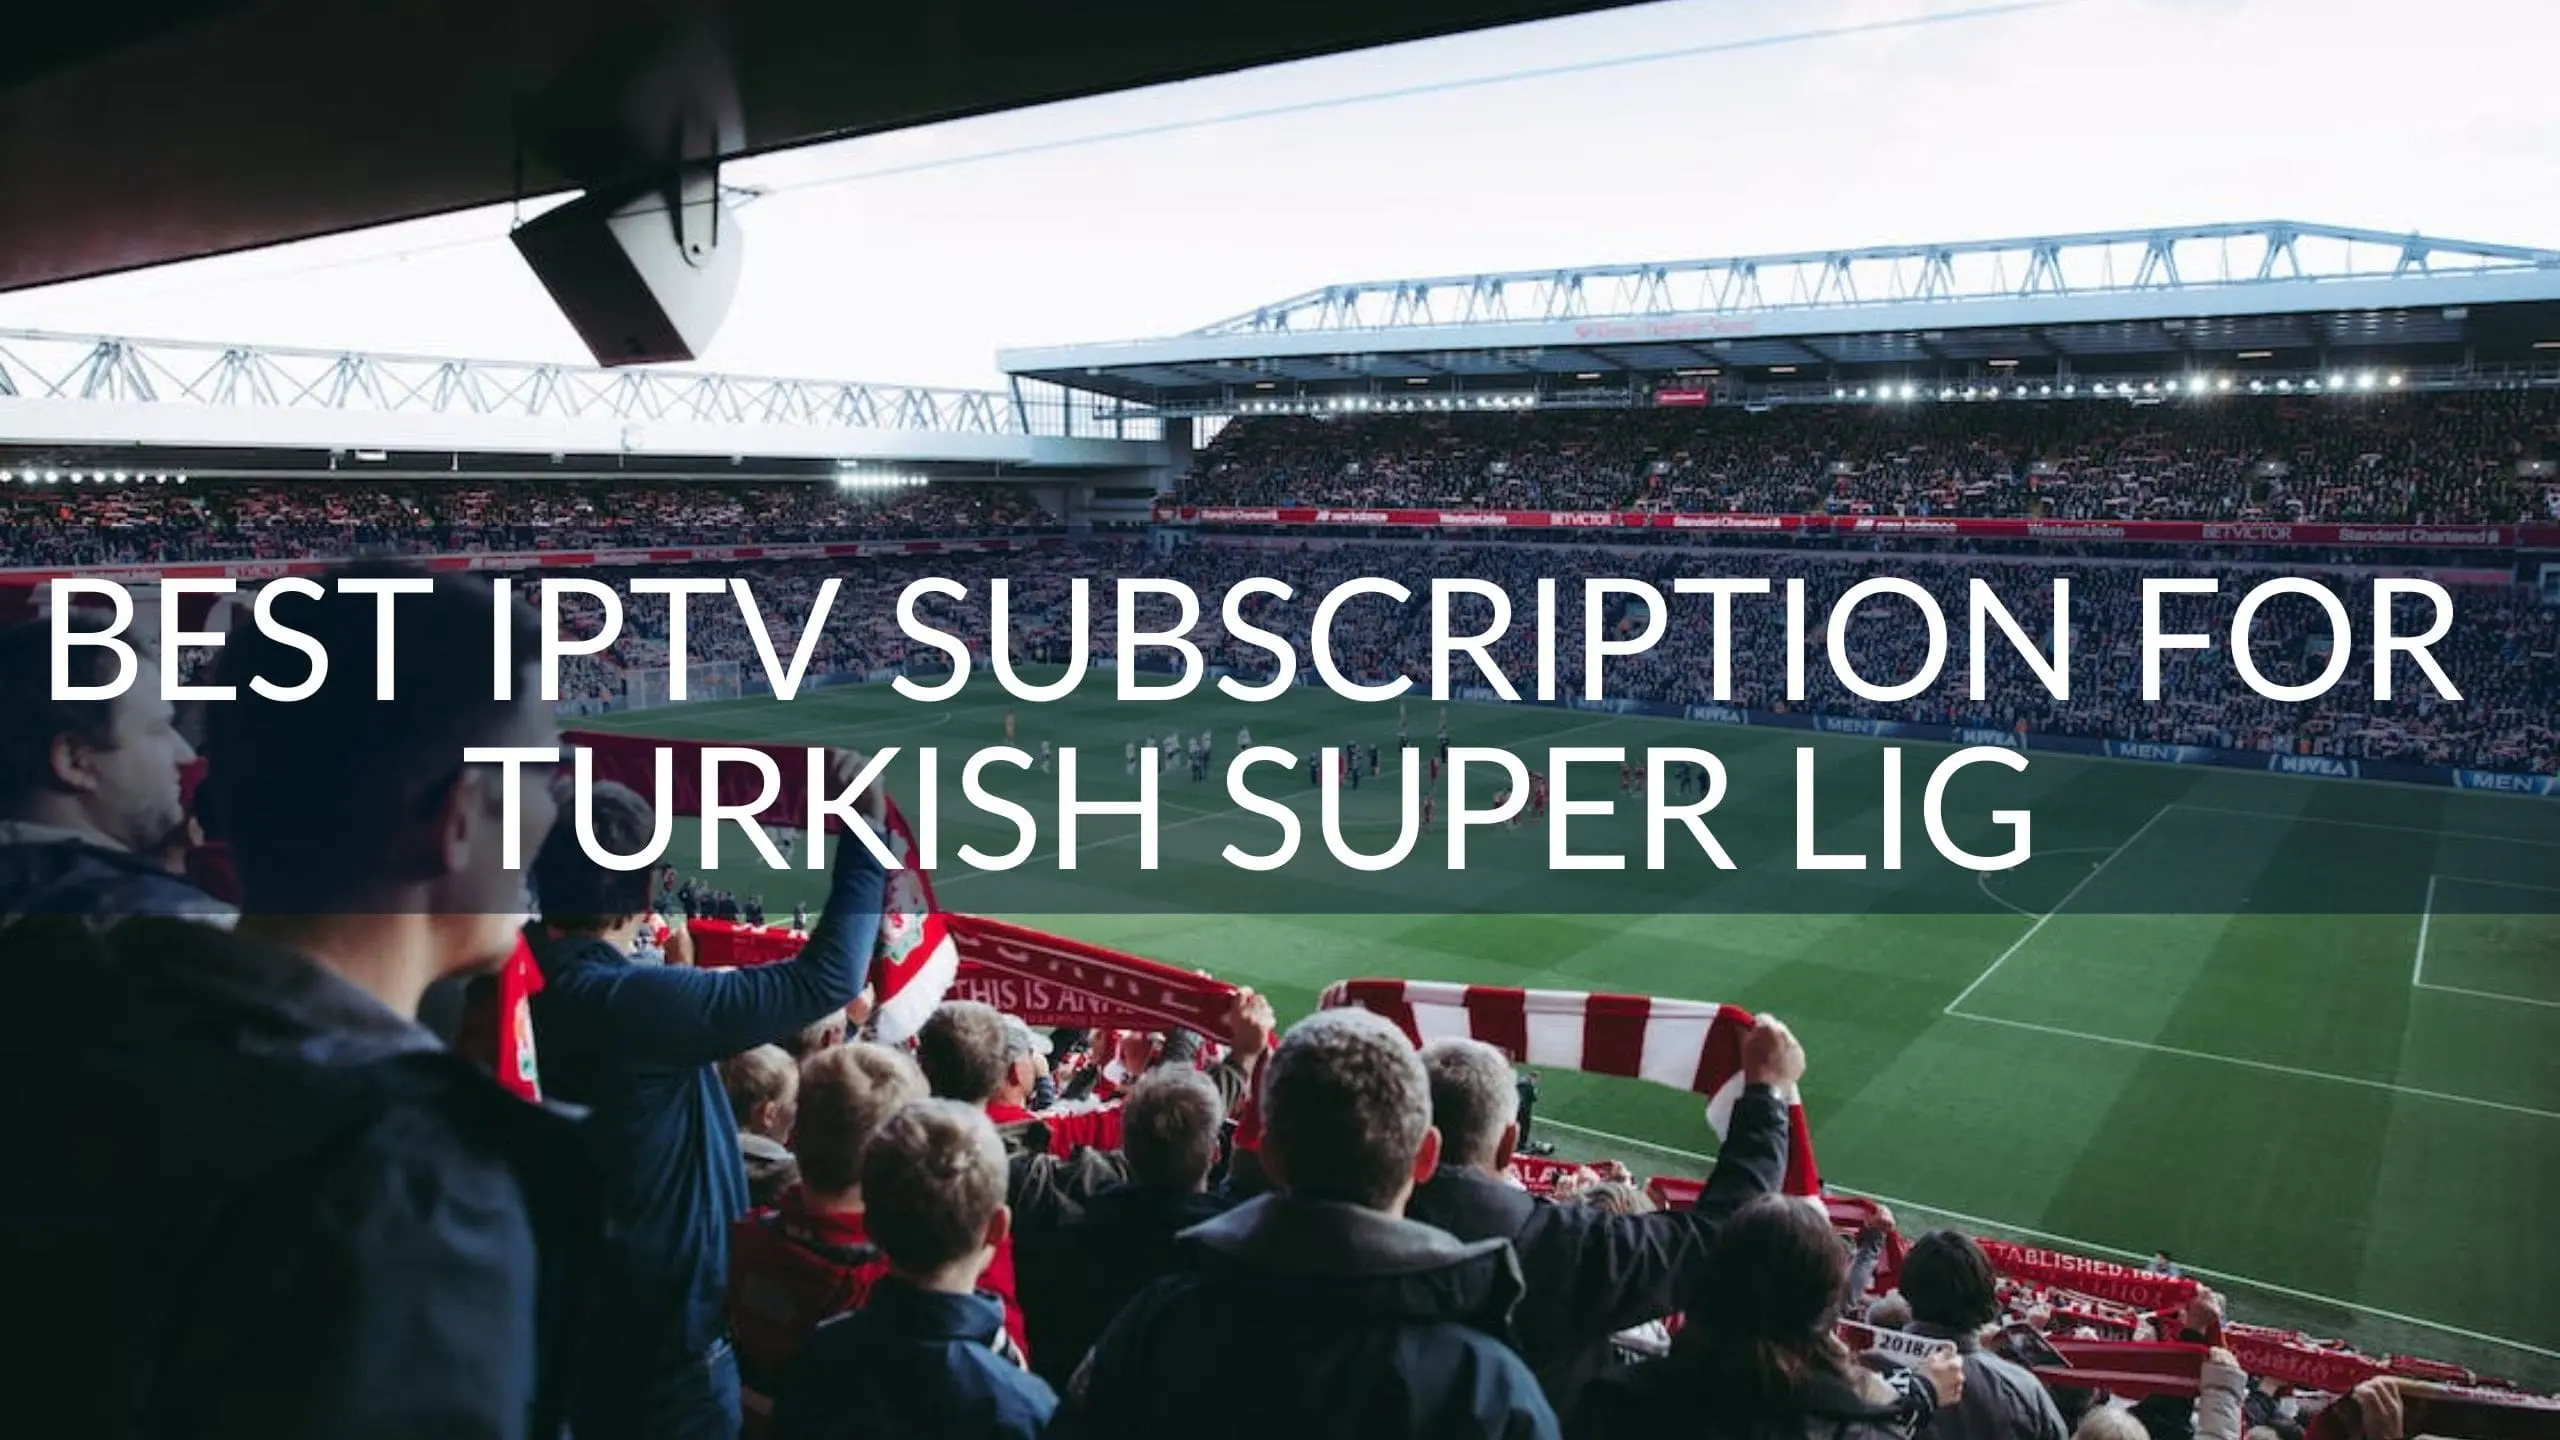 Best IPTV Subscription for Turkish Super Lig